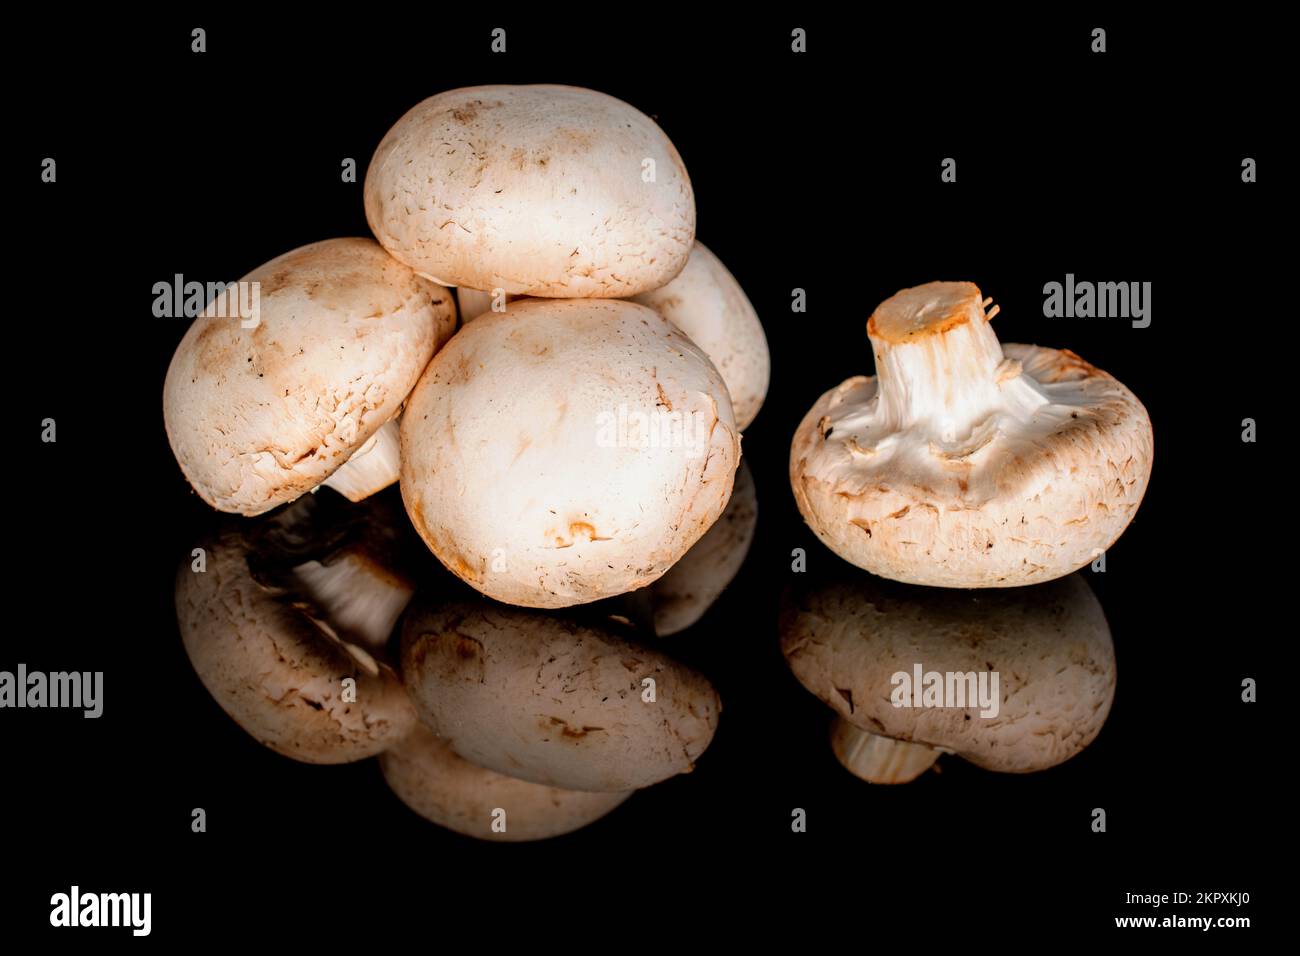 Diversi funghi champignon biologici freschi appetitosi su sfondo nero. Foto Stock